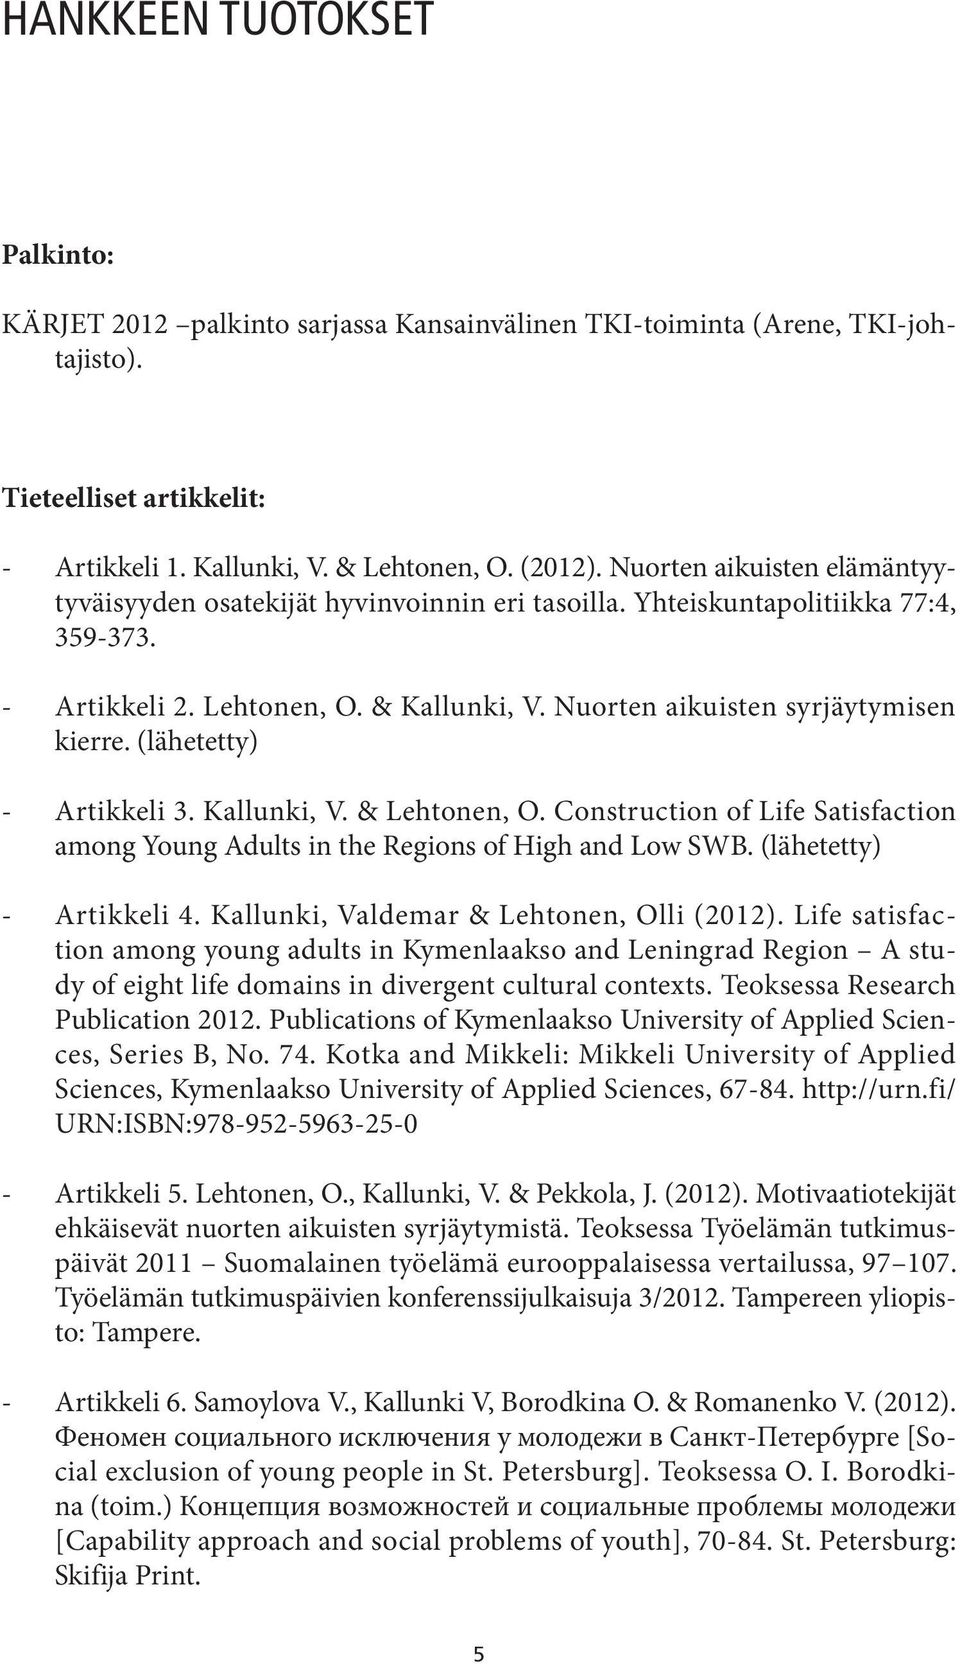 (lähetetty) - Artikkeli 3. Kallunki, V. & Lehtonen, O. Construction of Life Satisfaction among Young Adults in the Regions of High and Low SWB. (lähetetty) - Artikkeli 4.